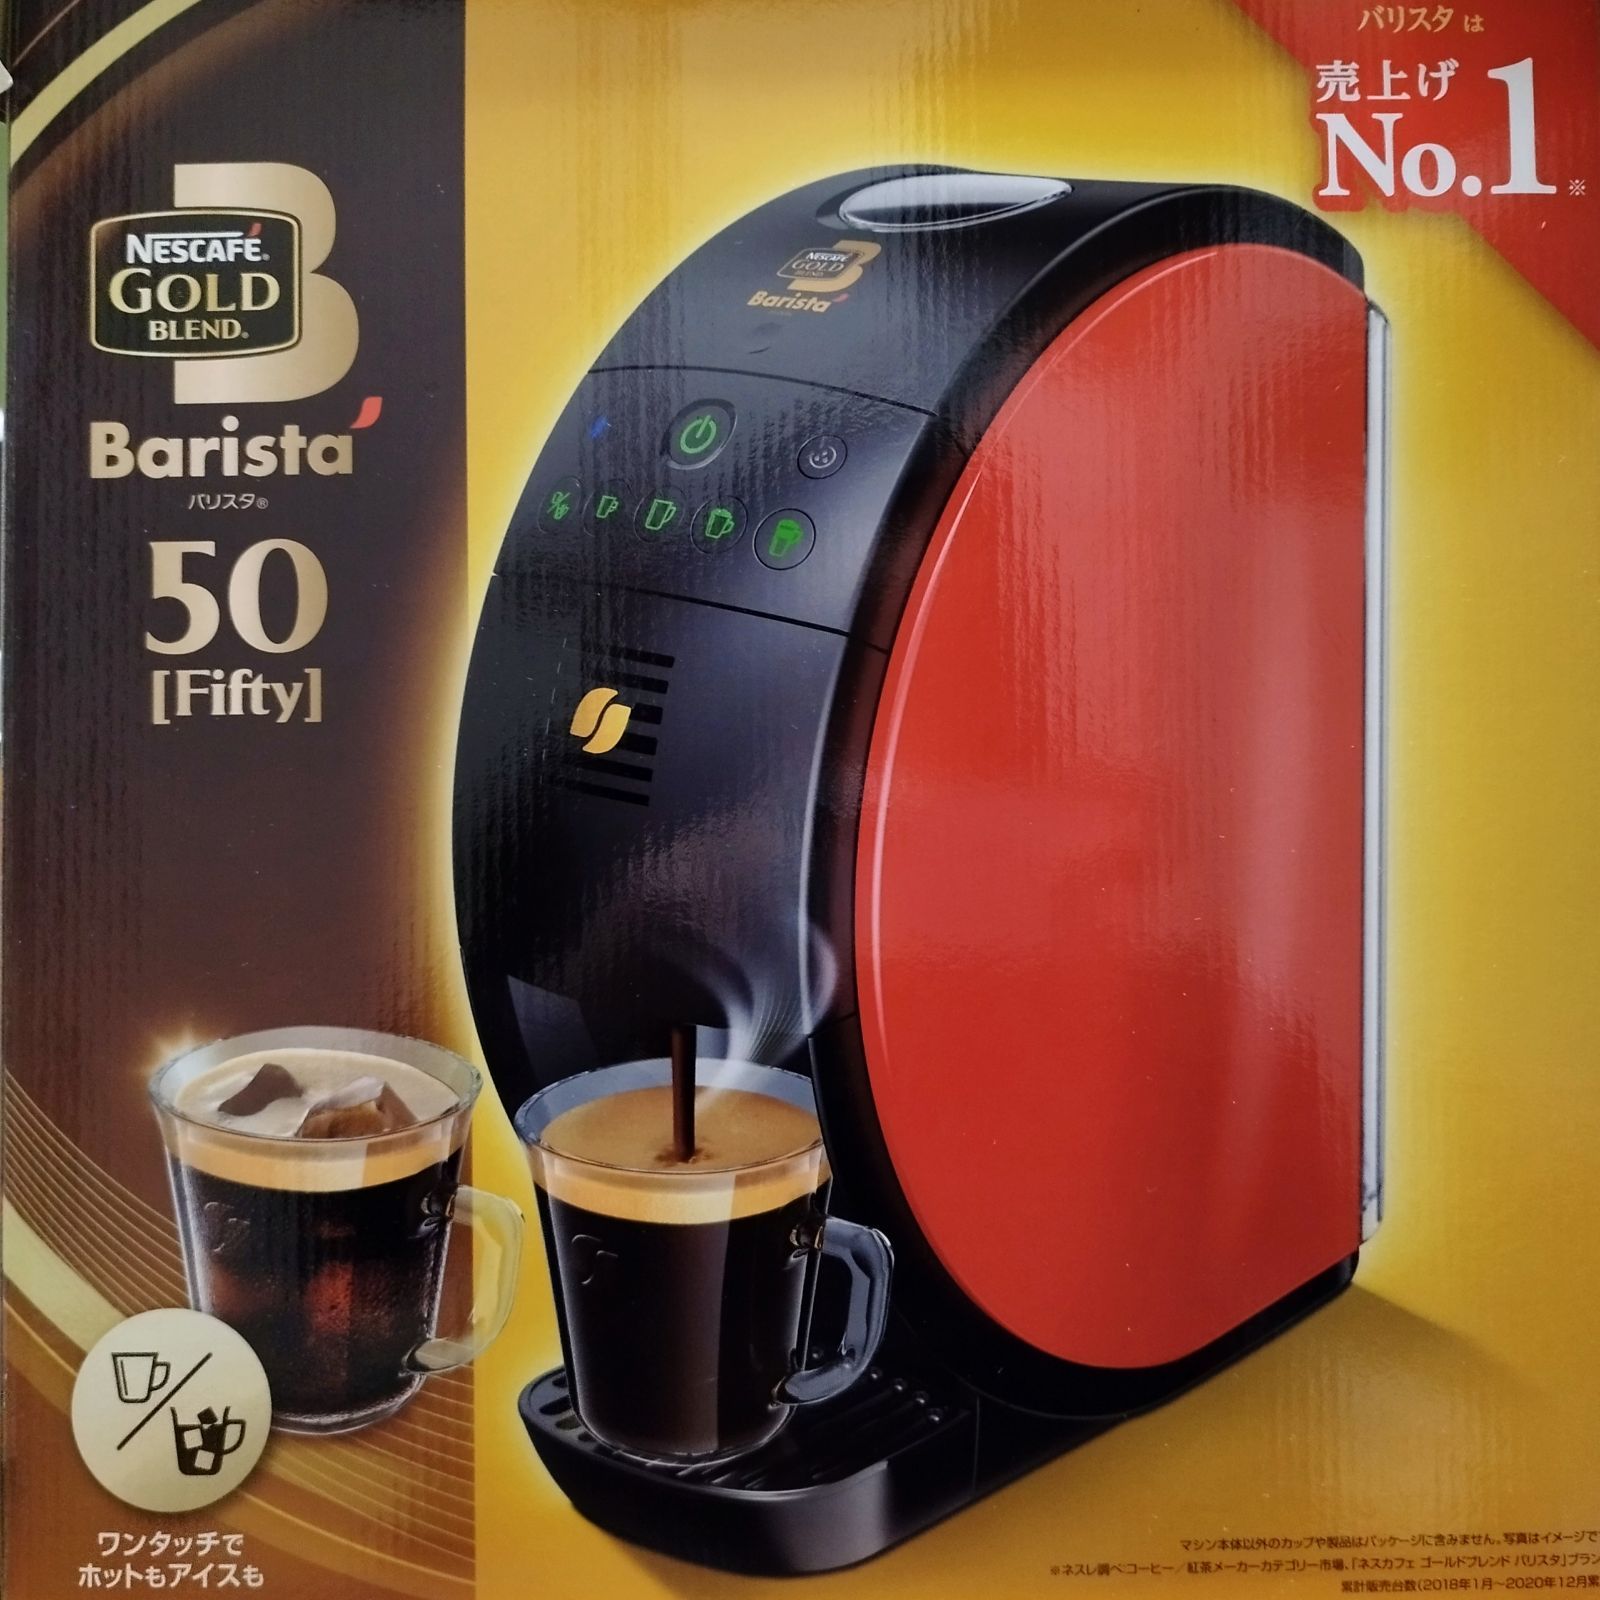 ネスカフェ ゴールドブレンド バリスタ50 - コーヒーメーカー